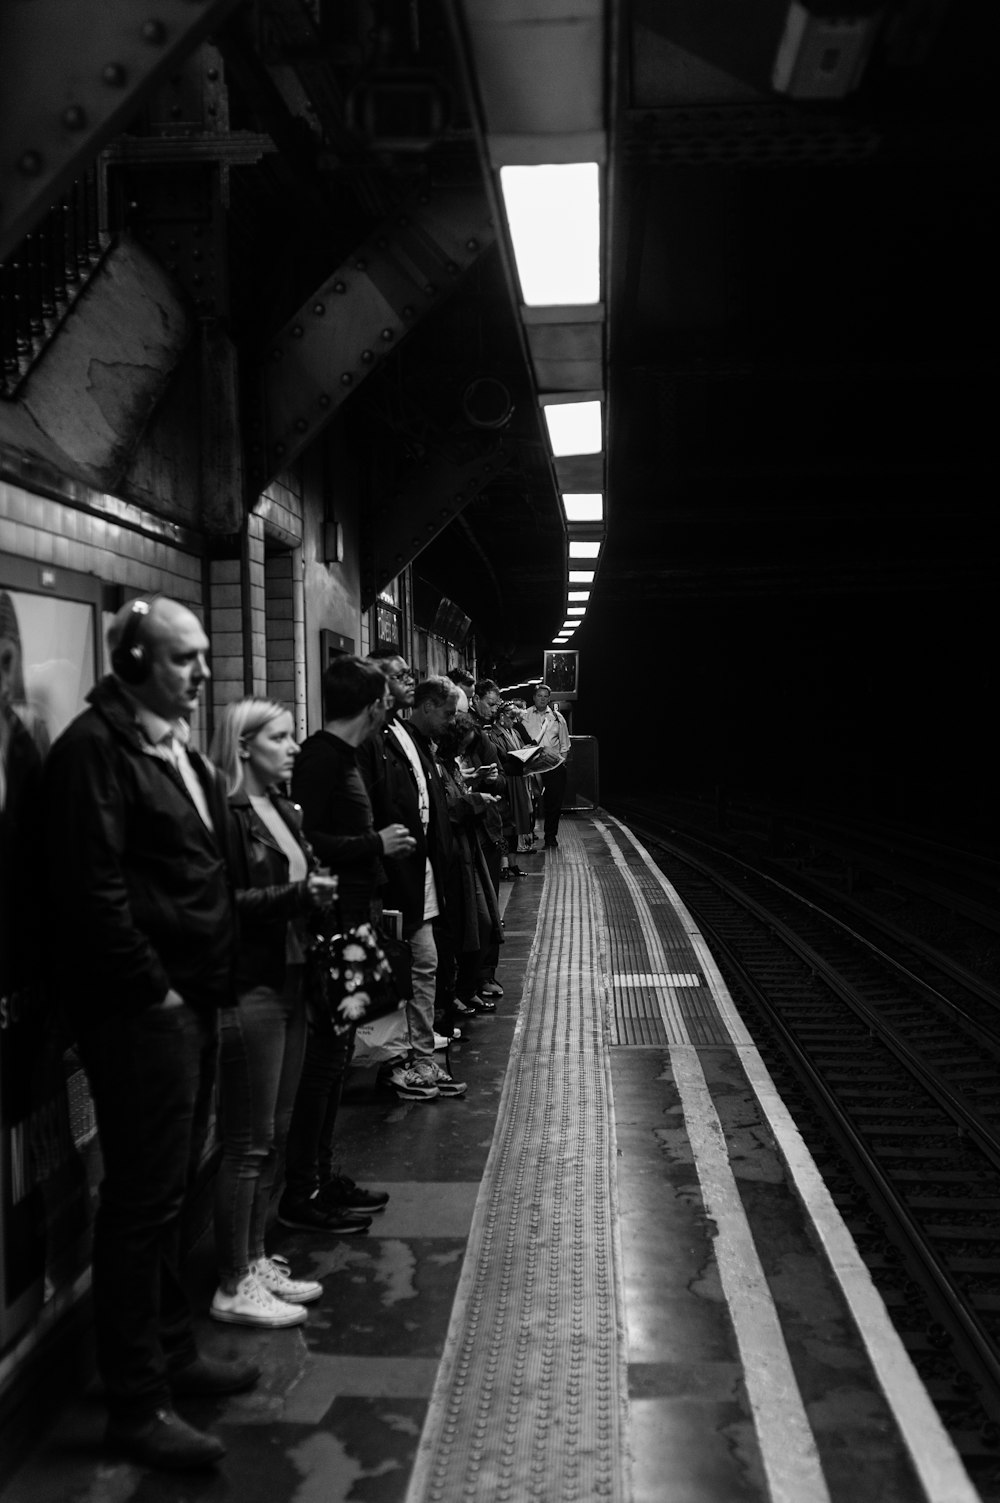 Photographie en niveaux de gris de personnes debout à côté d’un train